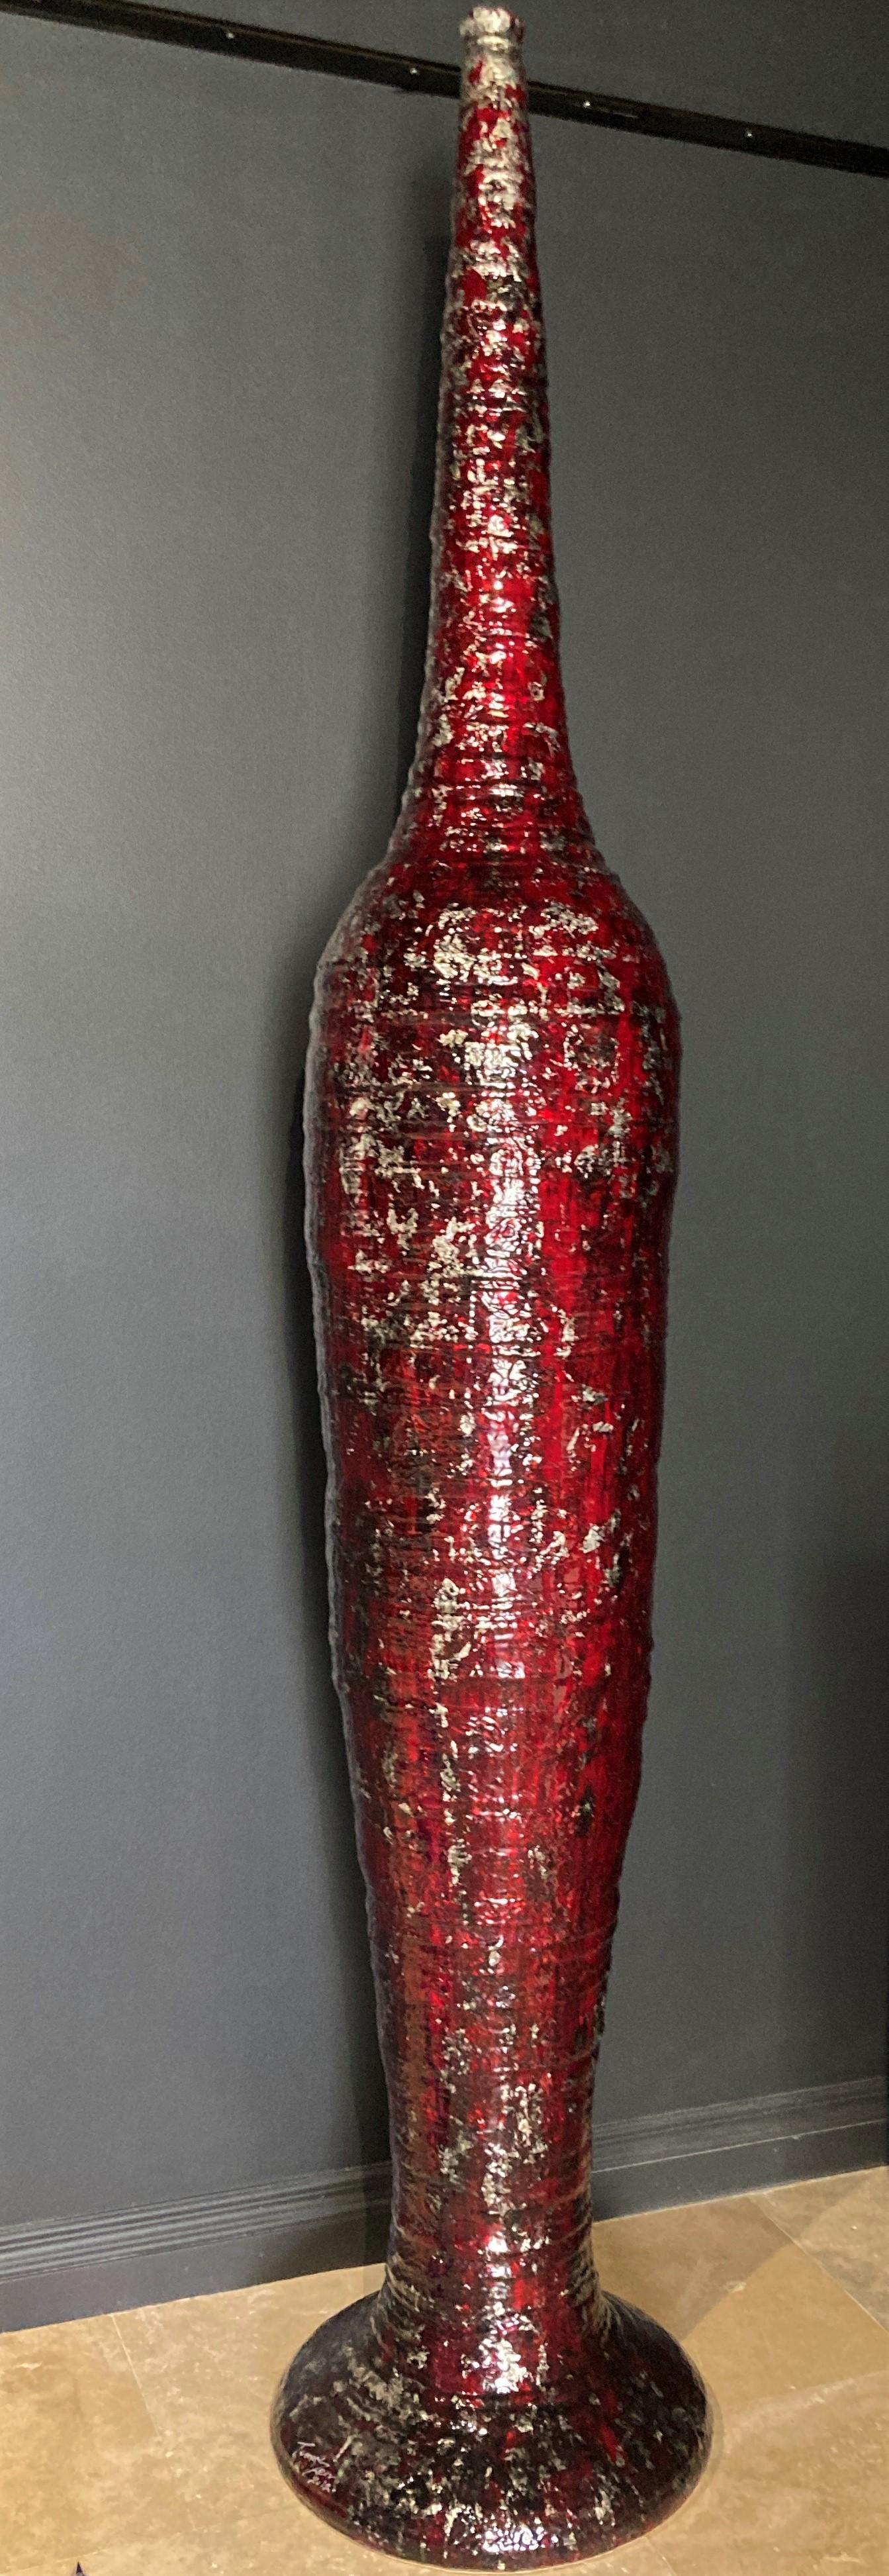 Tommy Zen Figurative Sculpture - Sculptee Red Vessel